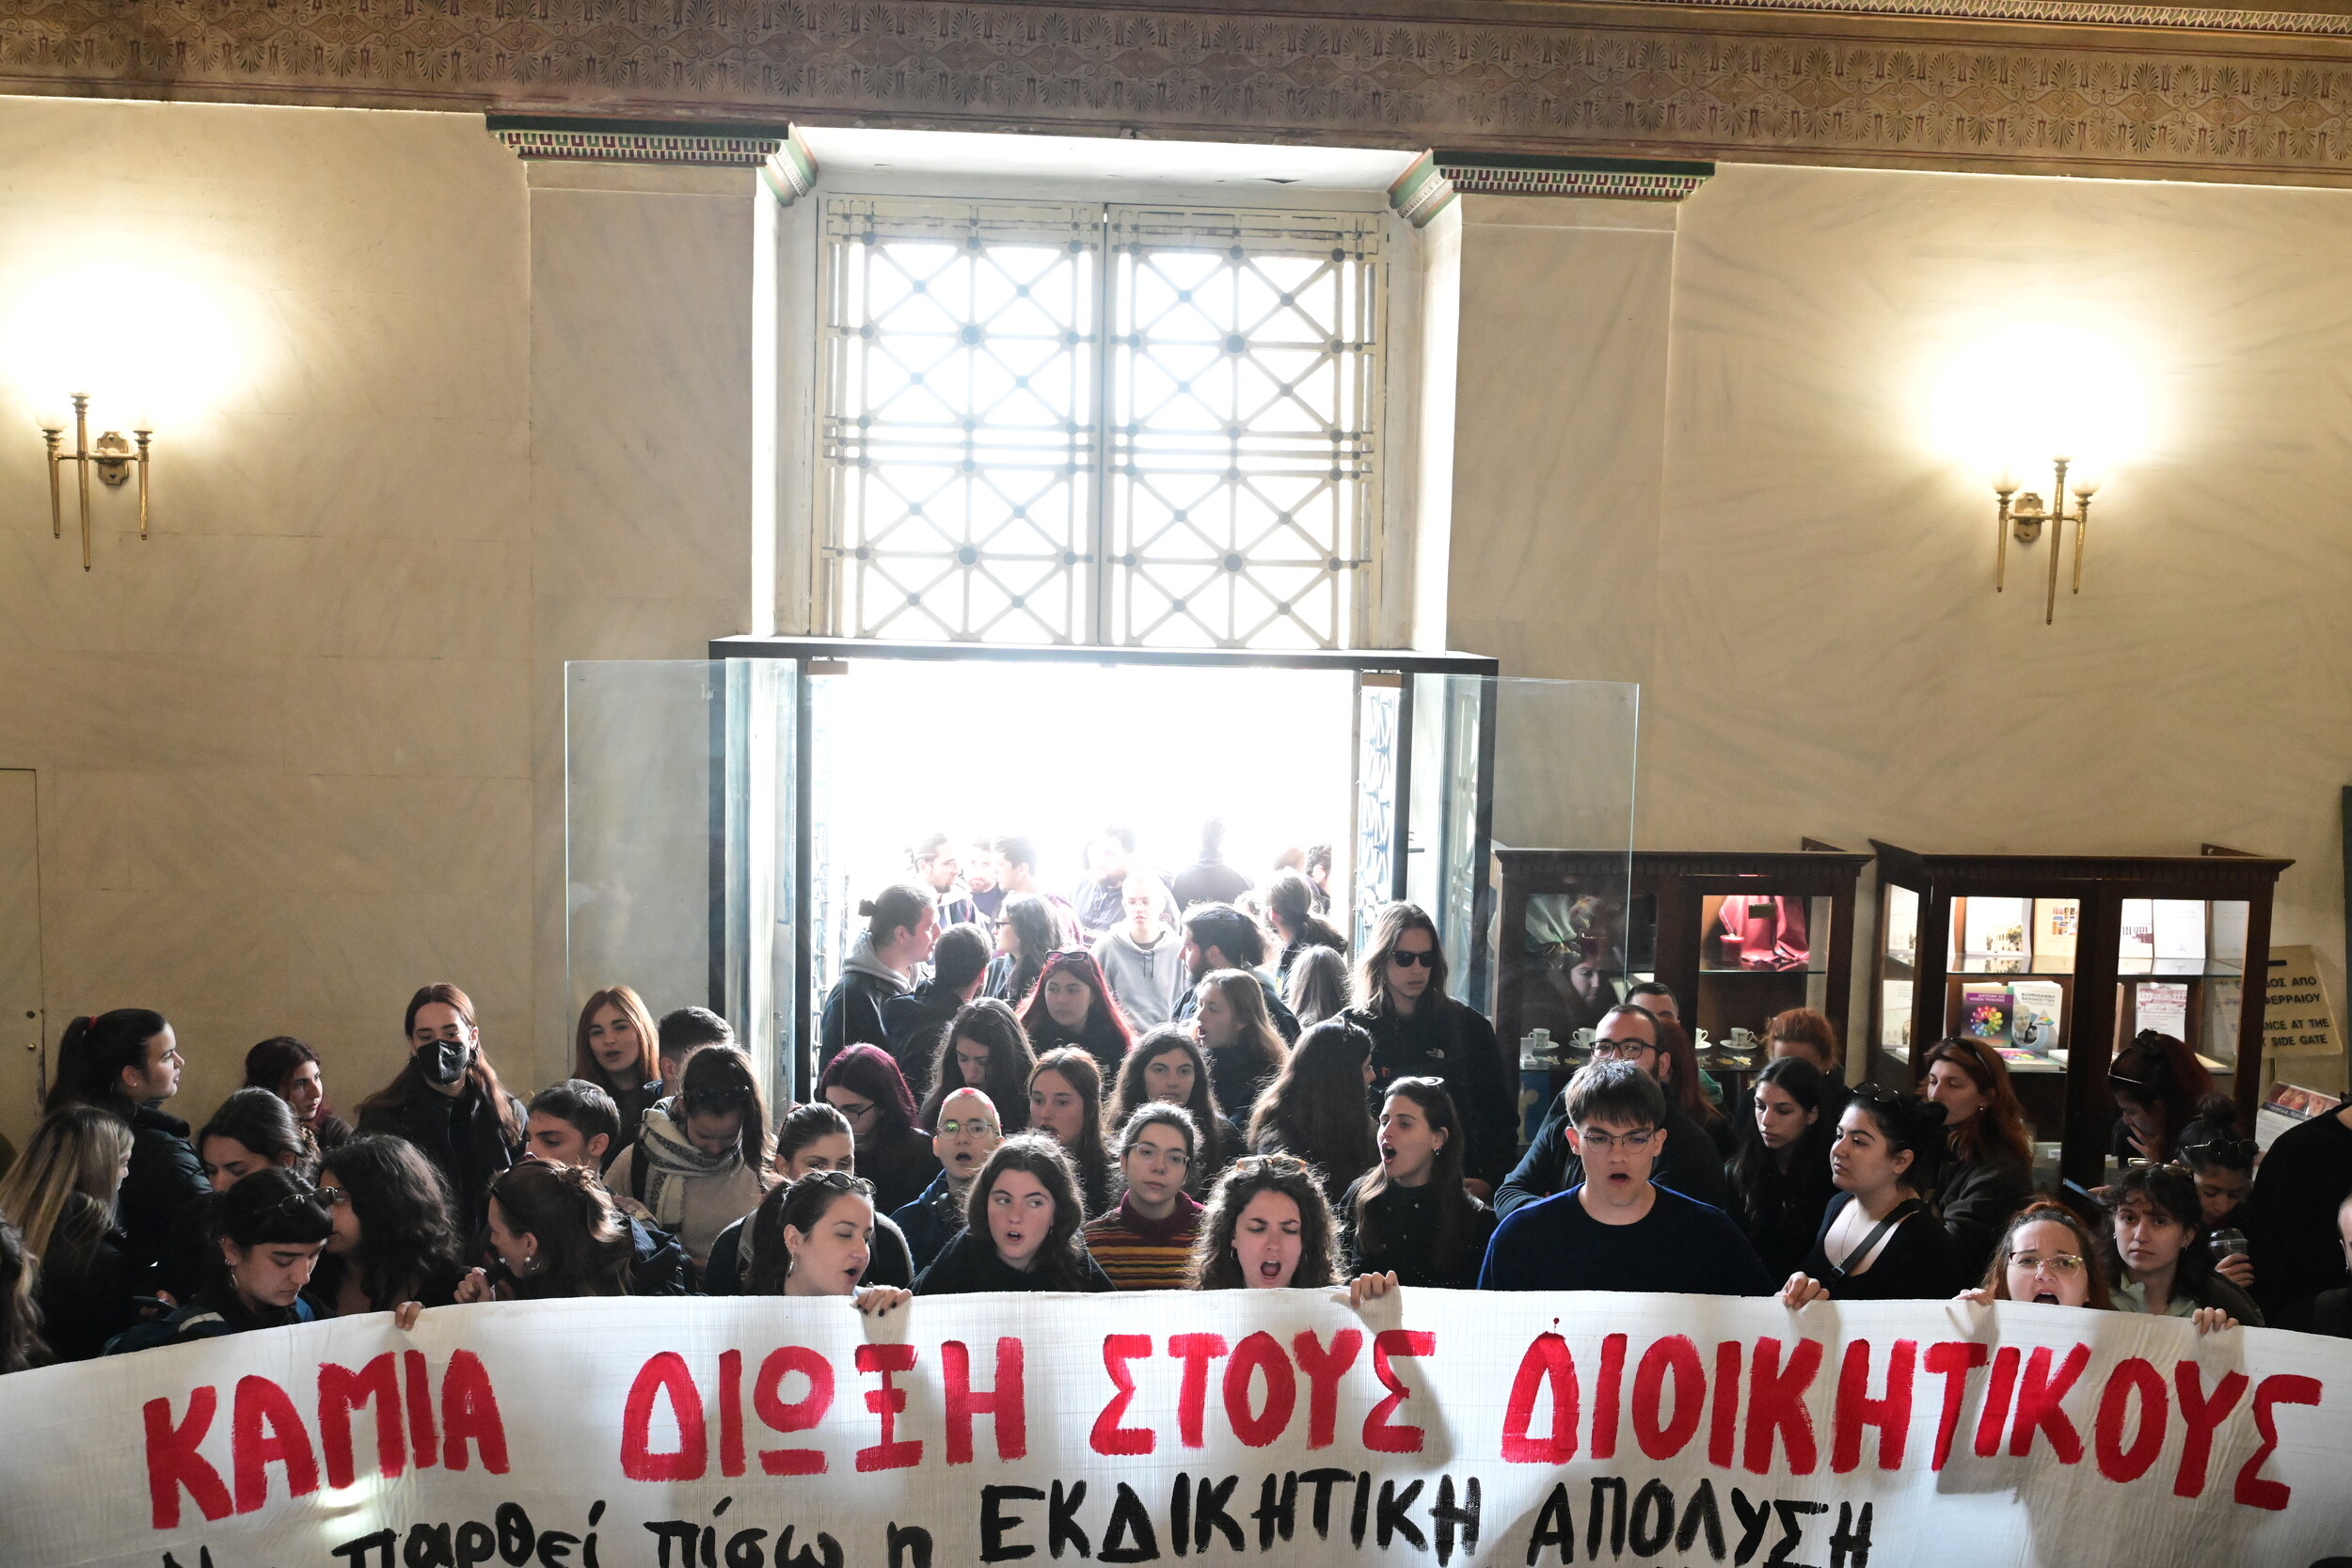 έφοδος φοιτητών στο πανεπιστήμιο αθηνών για να ανακληθεί η απόλυση του διοικητικού υπαλλήλου